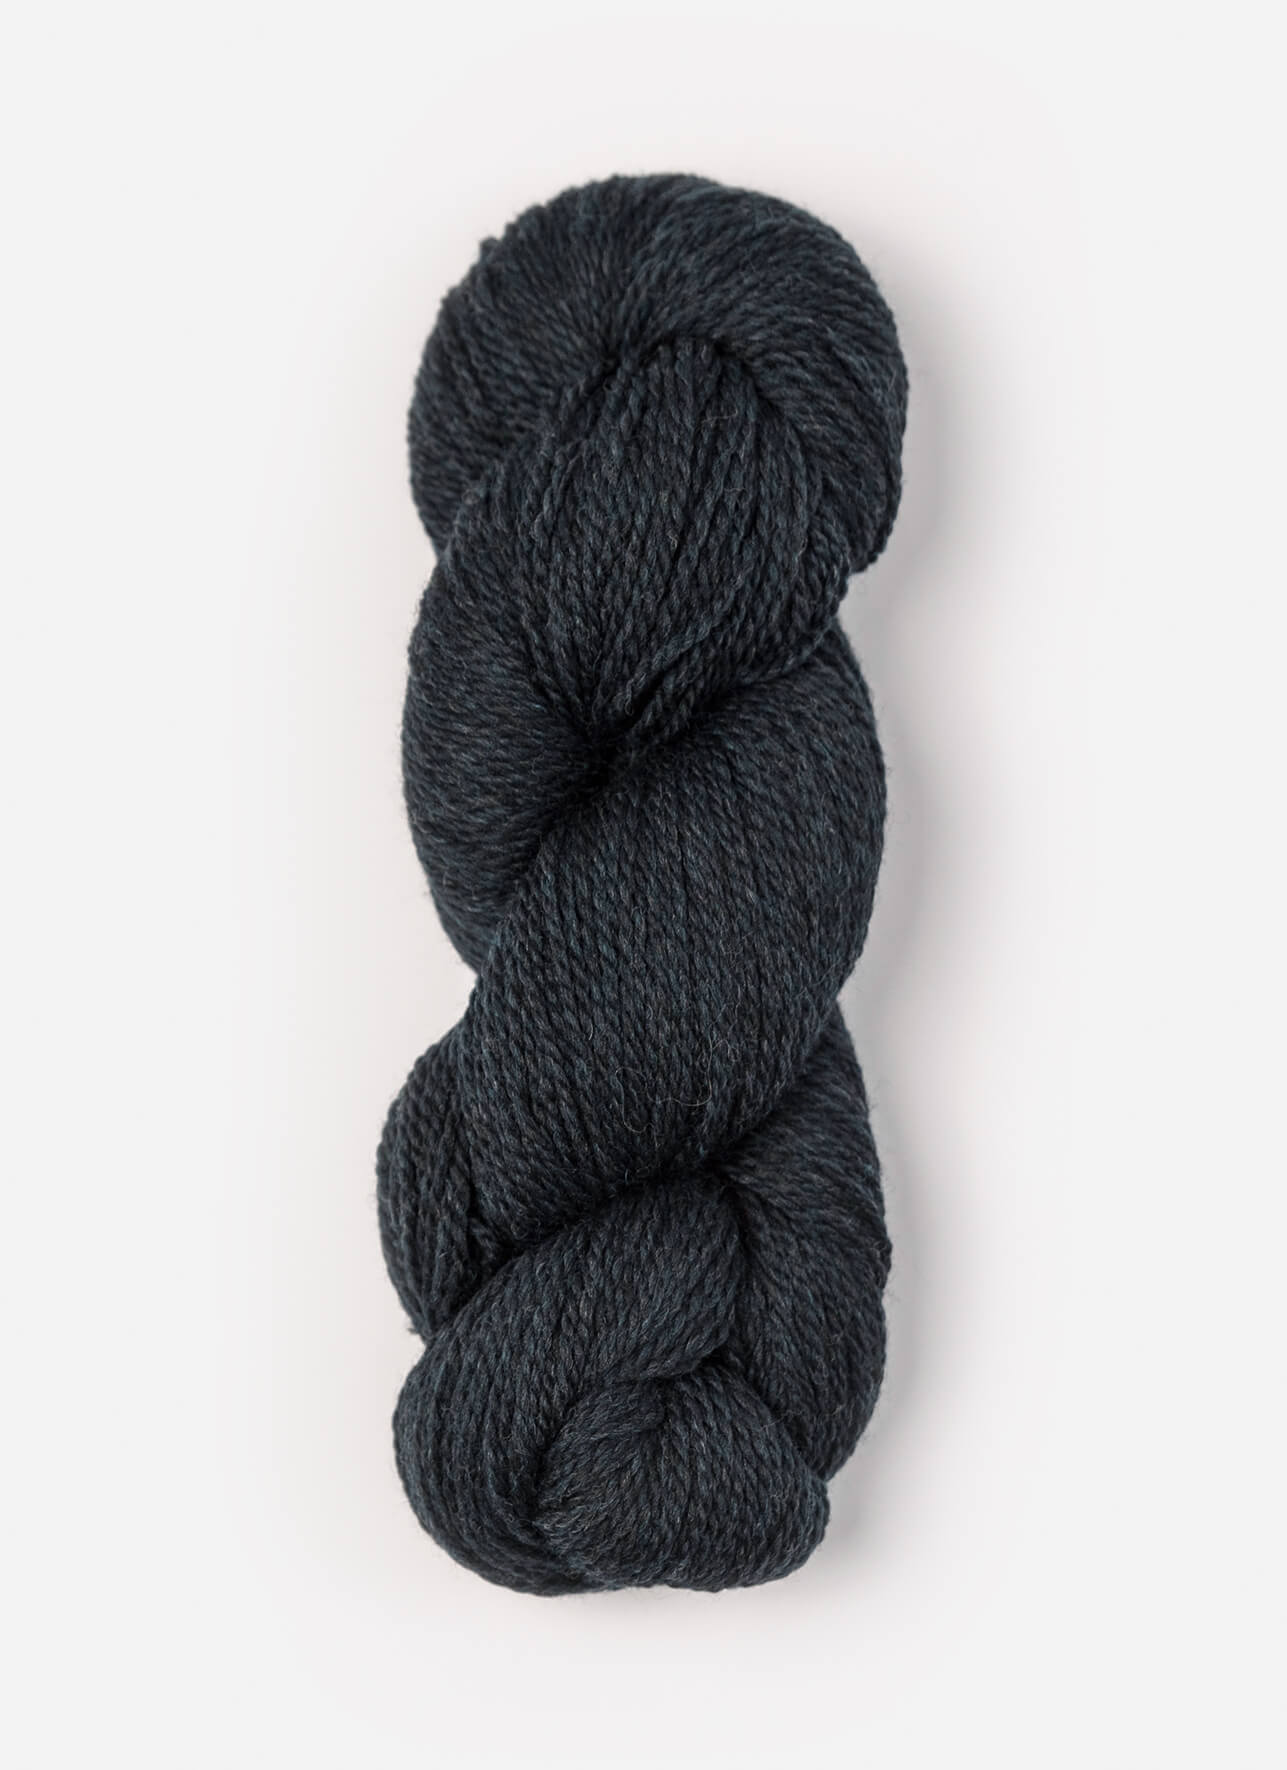 Blue Sky Fibers Woolstok 150 gram wool yarn color 1317